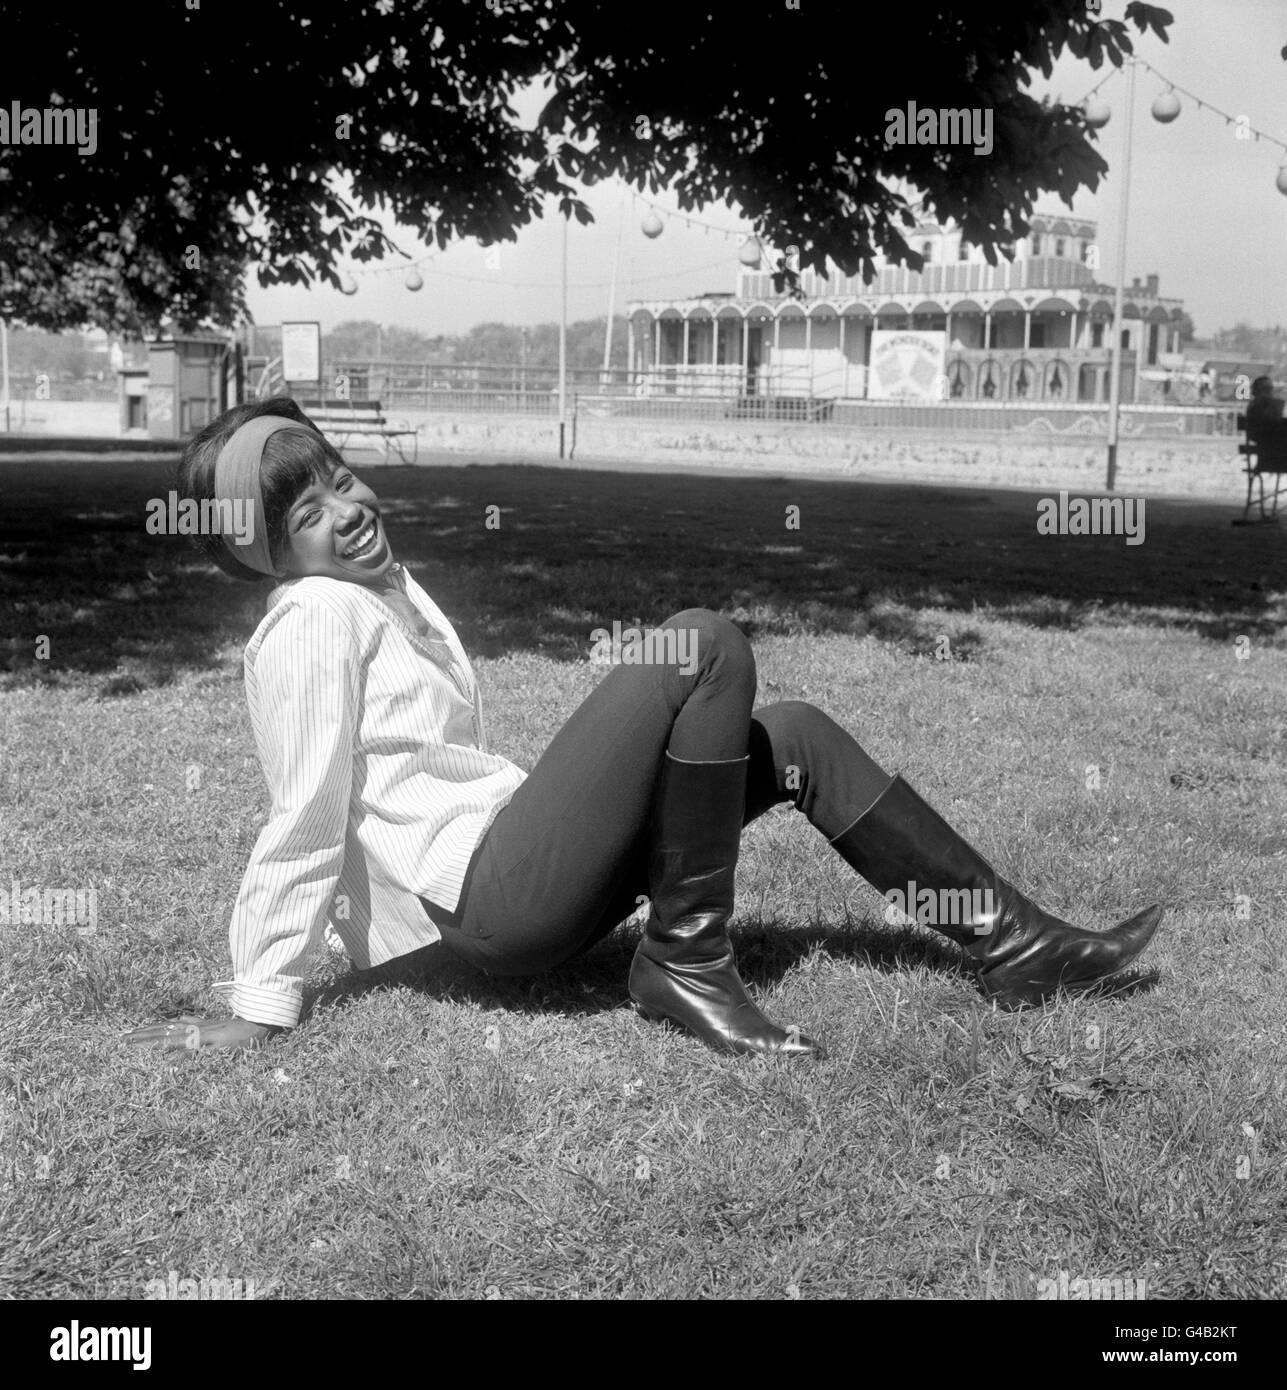 Battersea Pleasure Gardens, Londra. Millie, cantante pop di sedici anni, si rilassa e gode di una giornata fuori ai Battersea Pleasure Gardens di Londra. Foto Stock